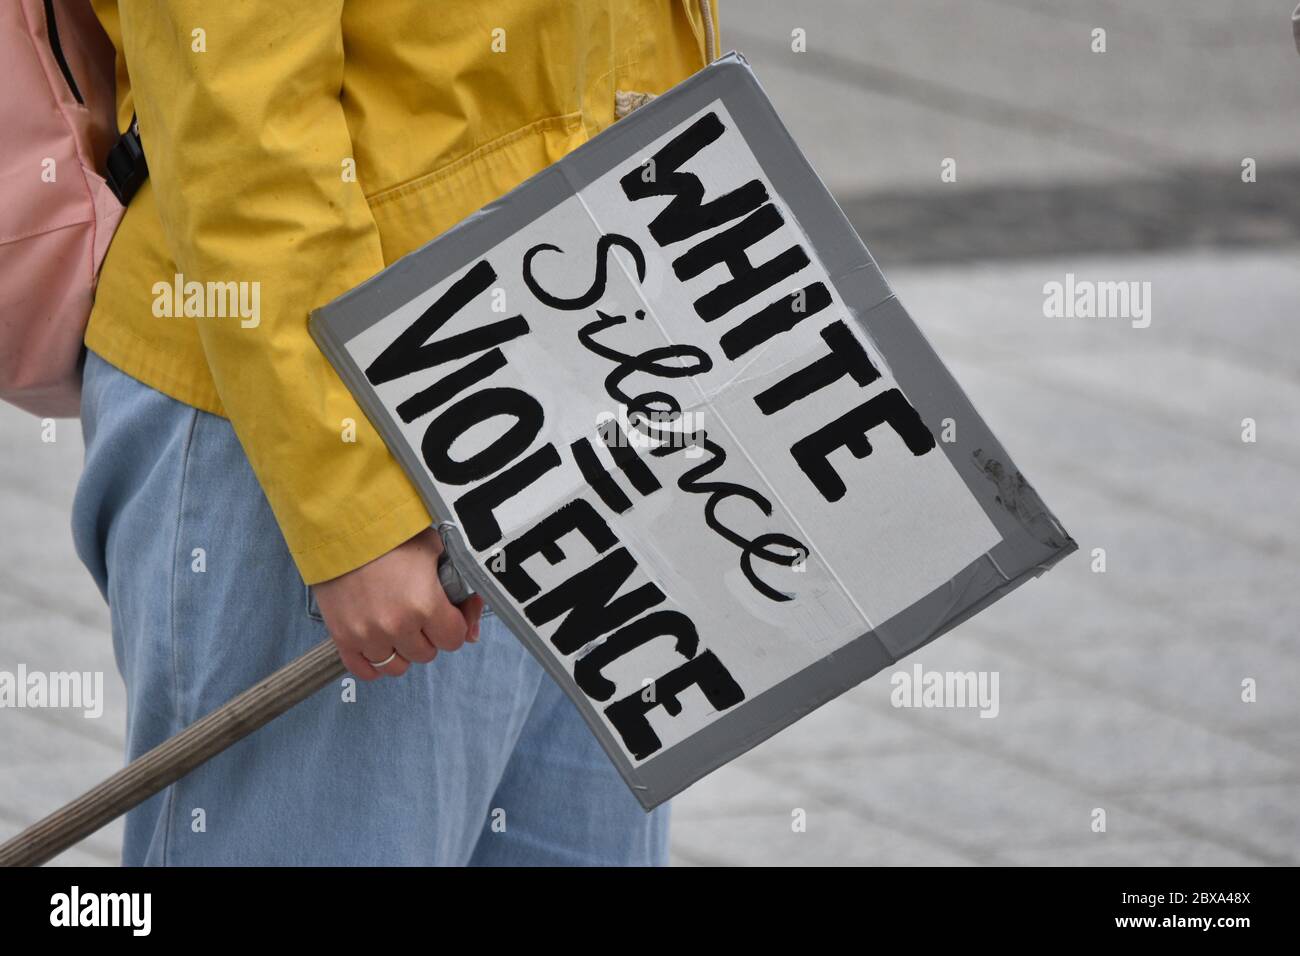 Une jeune femme du caucase proteste lors d'un rassemblement britannique contre le racisme au Royaume-Uni, en tenant un panneau indiquant « le silence blanc est synonyme de violence ». Banque D'Images